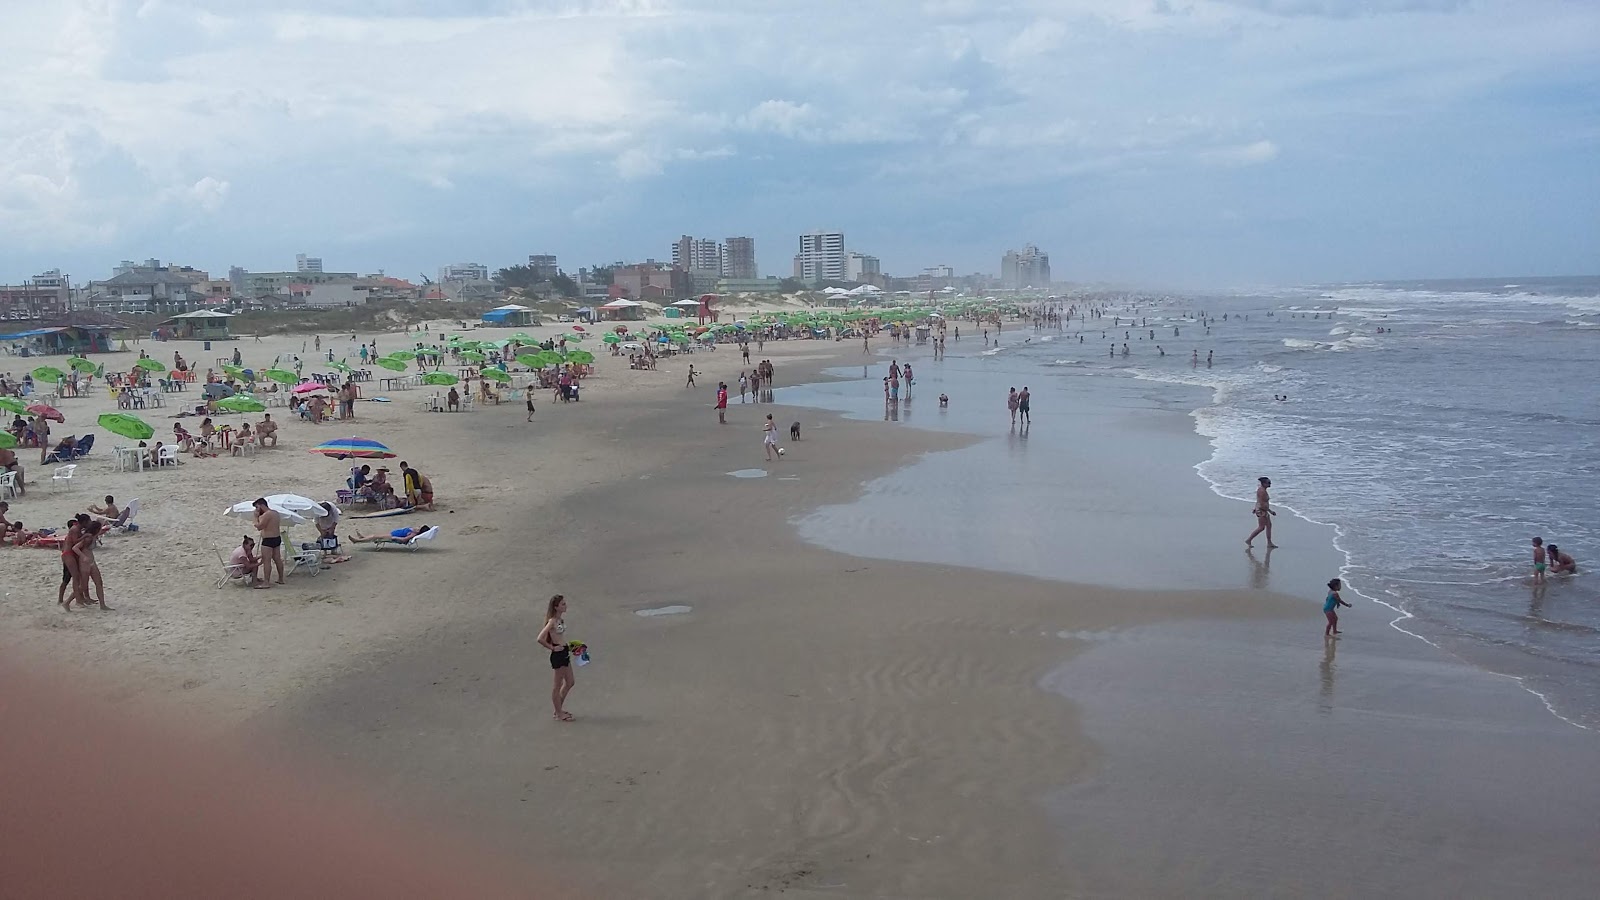 Praia de Tramandai'in fotoğrafı - rahatlamayı sevenler arasında popüler bir yer